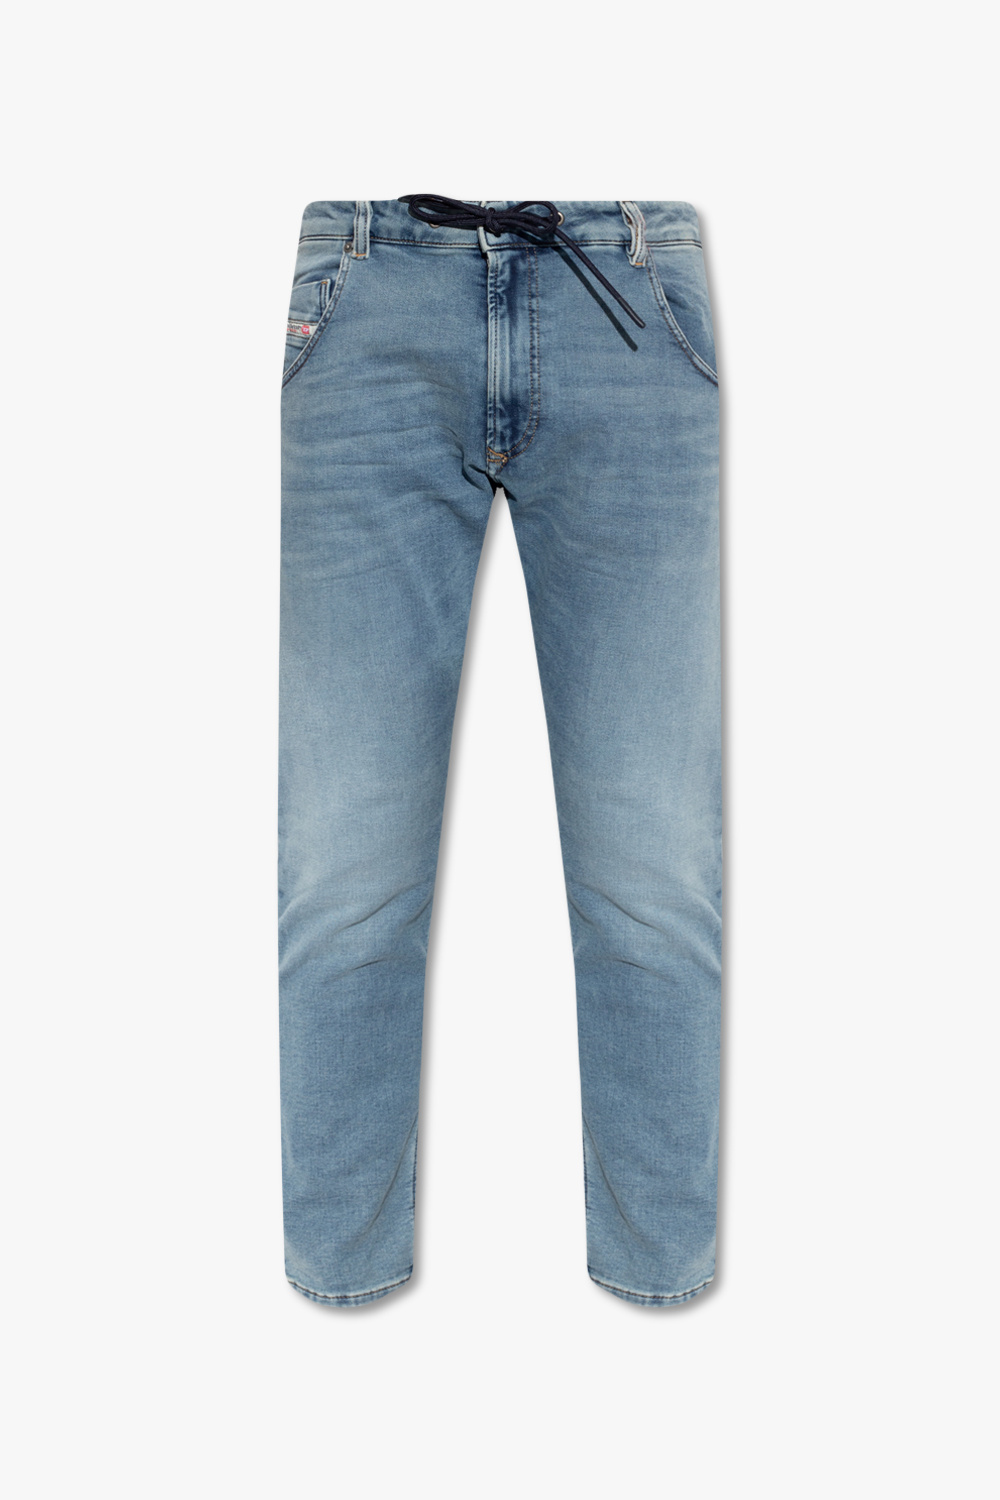 Diesel ‘KROOLEY-Y-T’ jeans | Men's Clothing | Vitkac